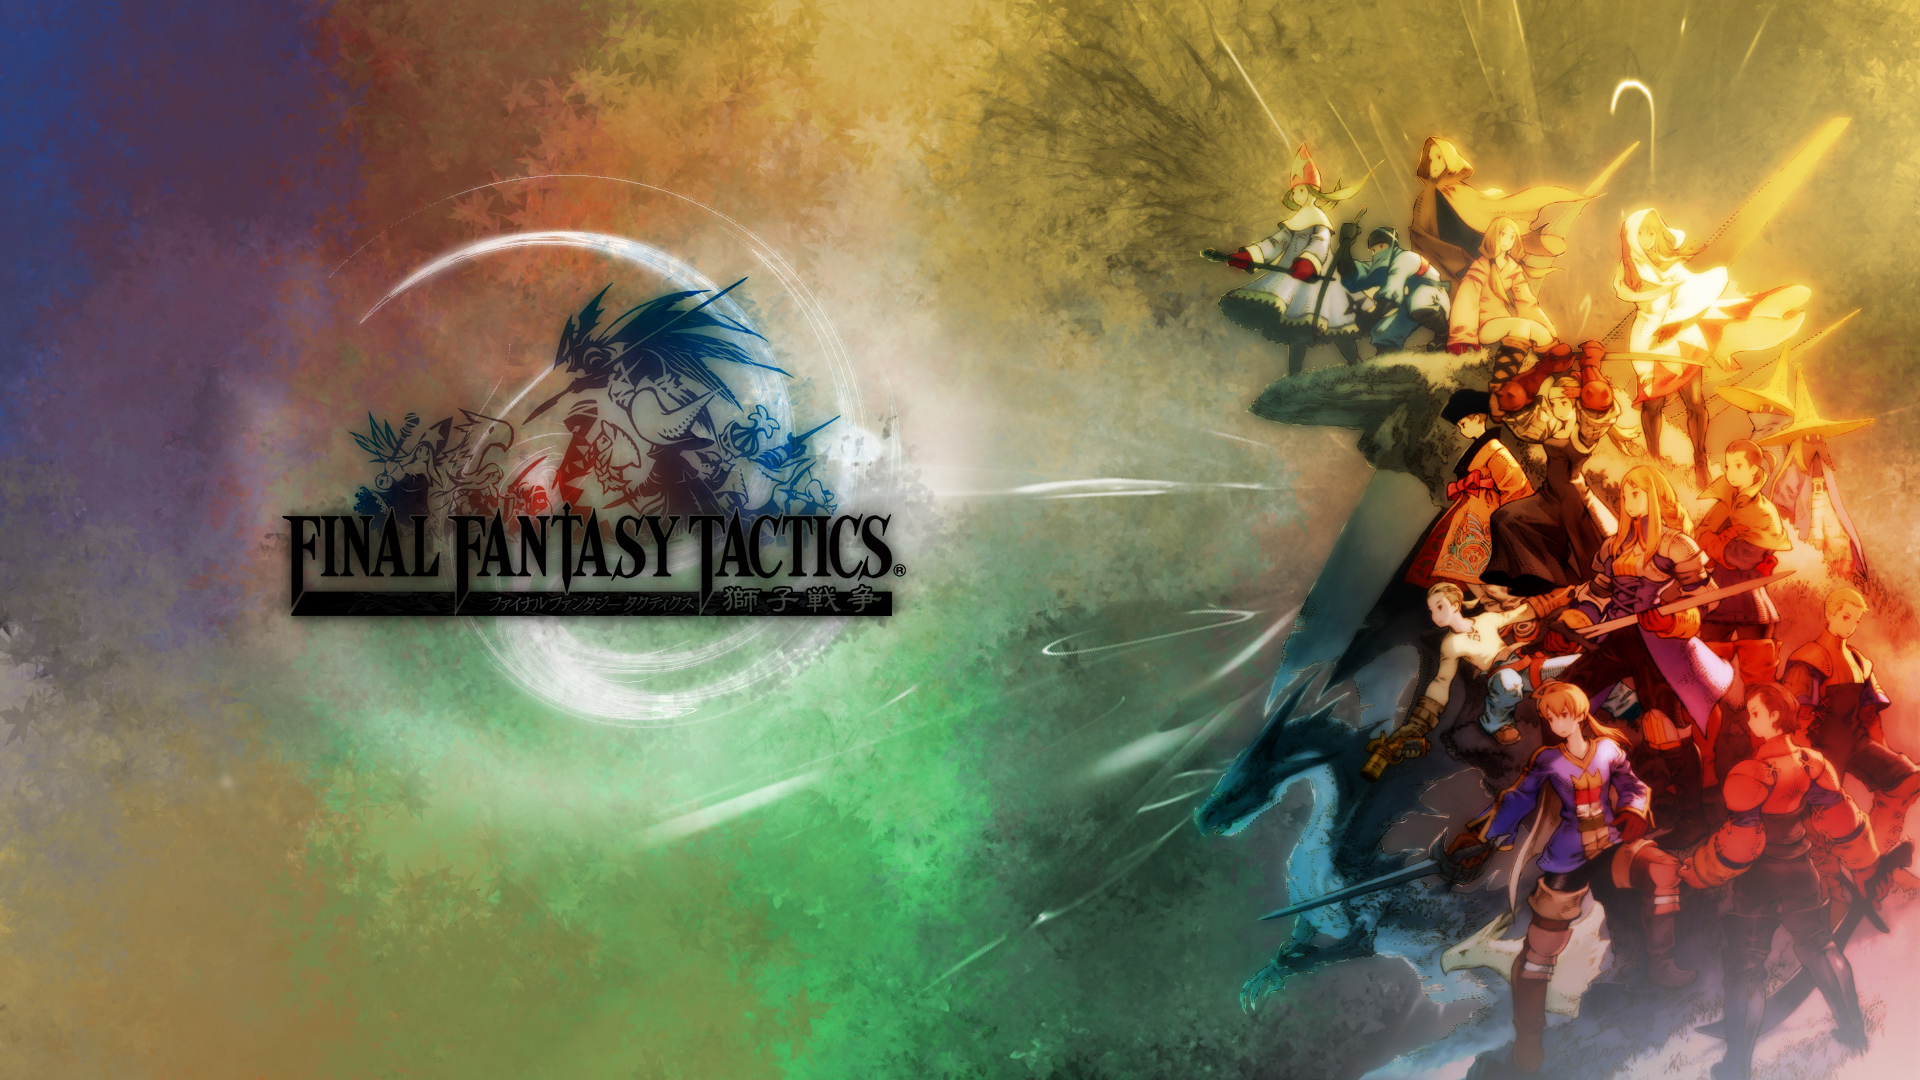 Final Fantasy Final Fantasy Tactics 1920x1080